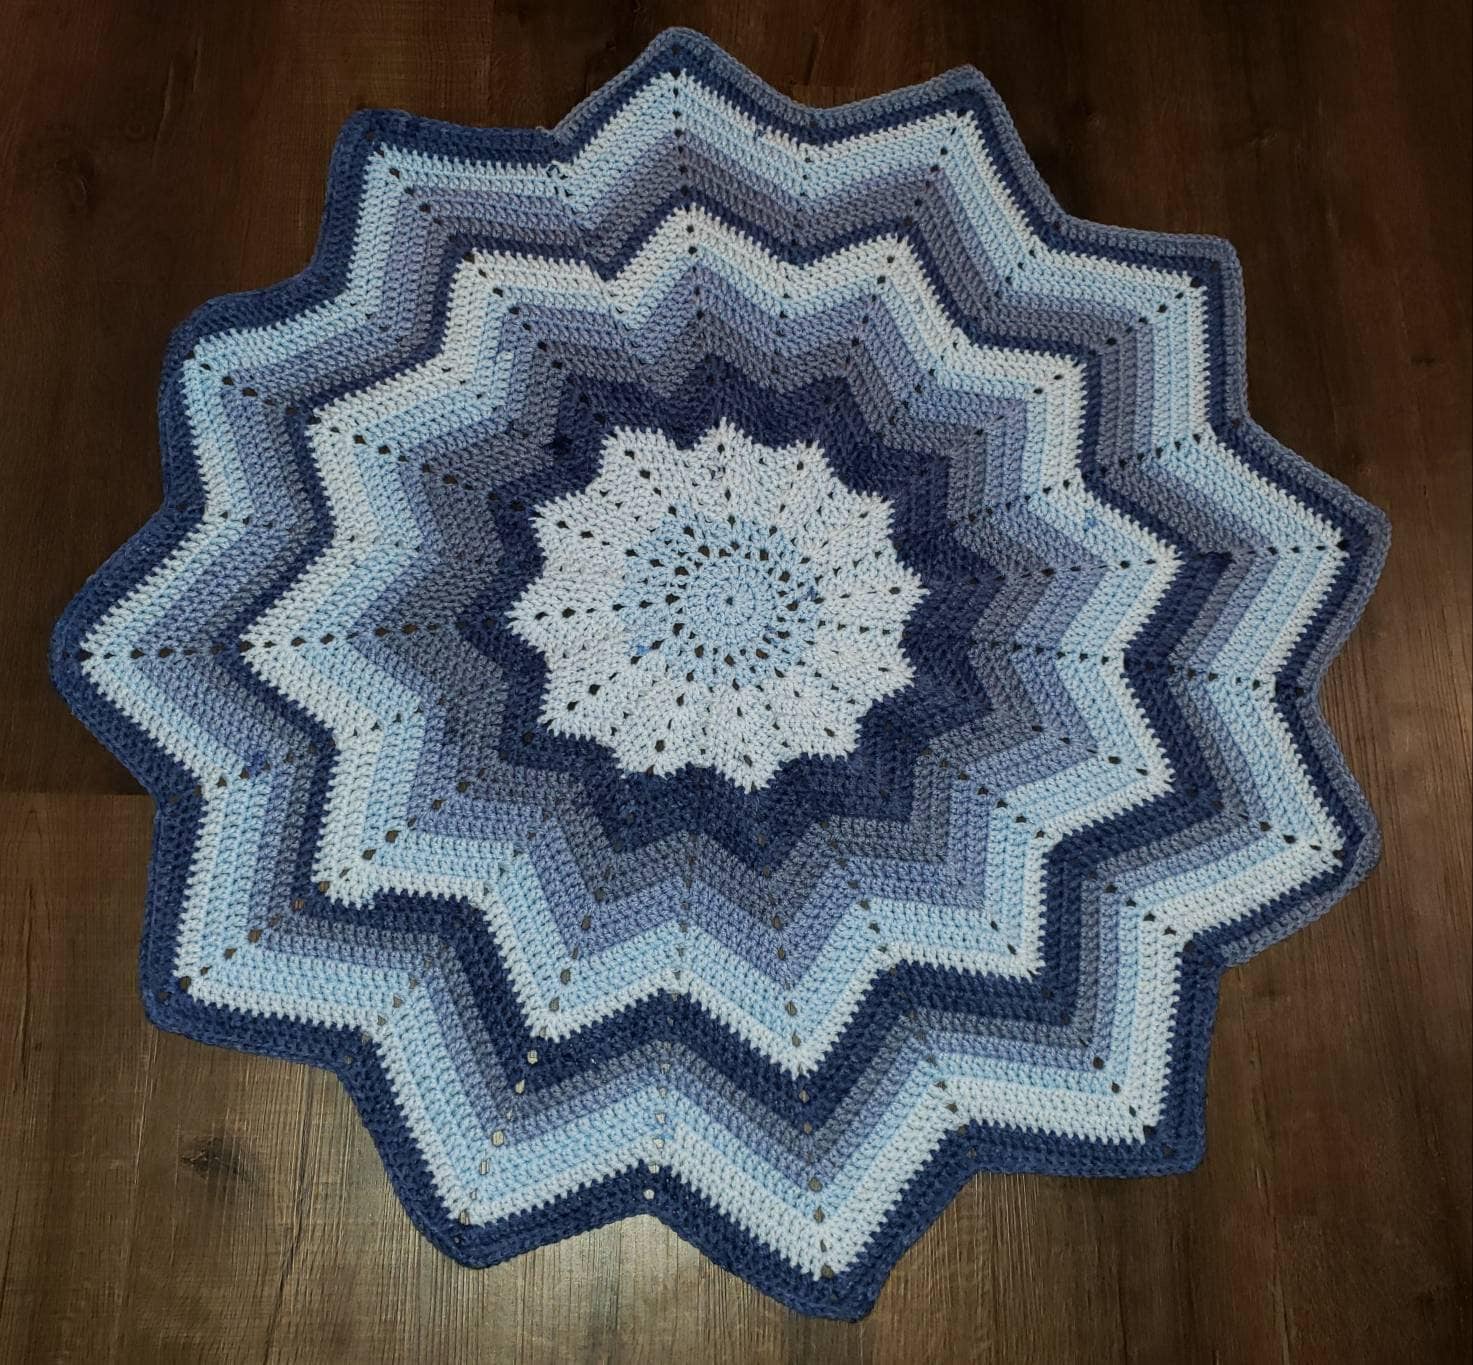 12 point star crocheted baby blanket | Etsy